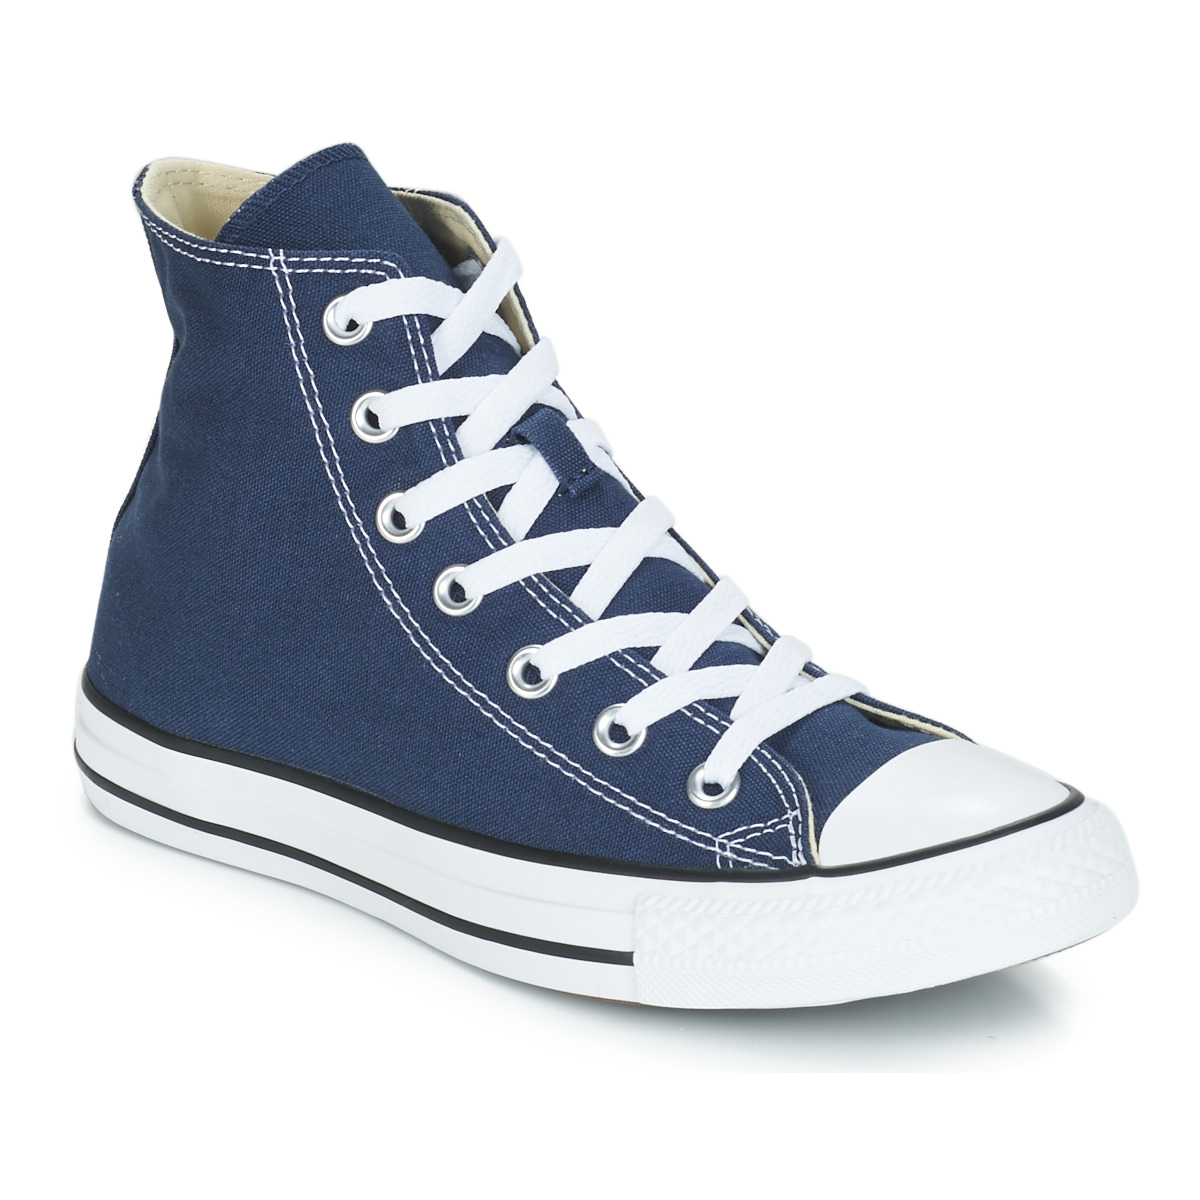 Converse CHUCK TAYLOR ALL STAR CORE HI Marine - Consegna gratuita |  Spartoo.it ! - Scarpe Sneakers alte 62,99 €